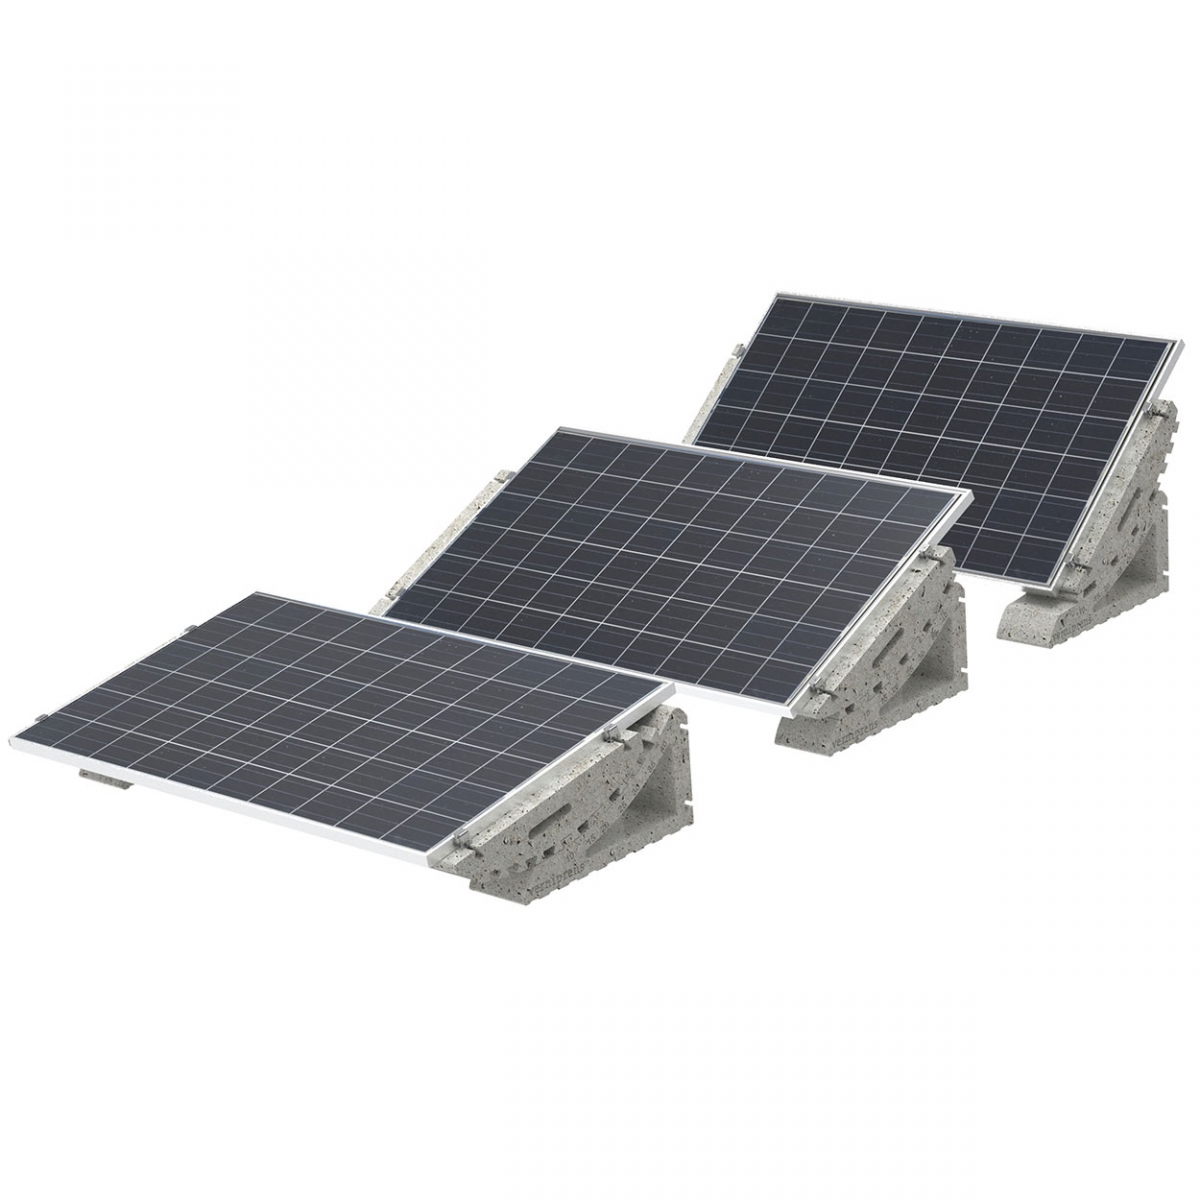 Comprar Soporte para panel solar suelo pared 10-80º Online - Sonicolor